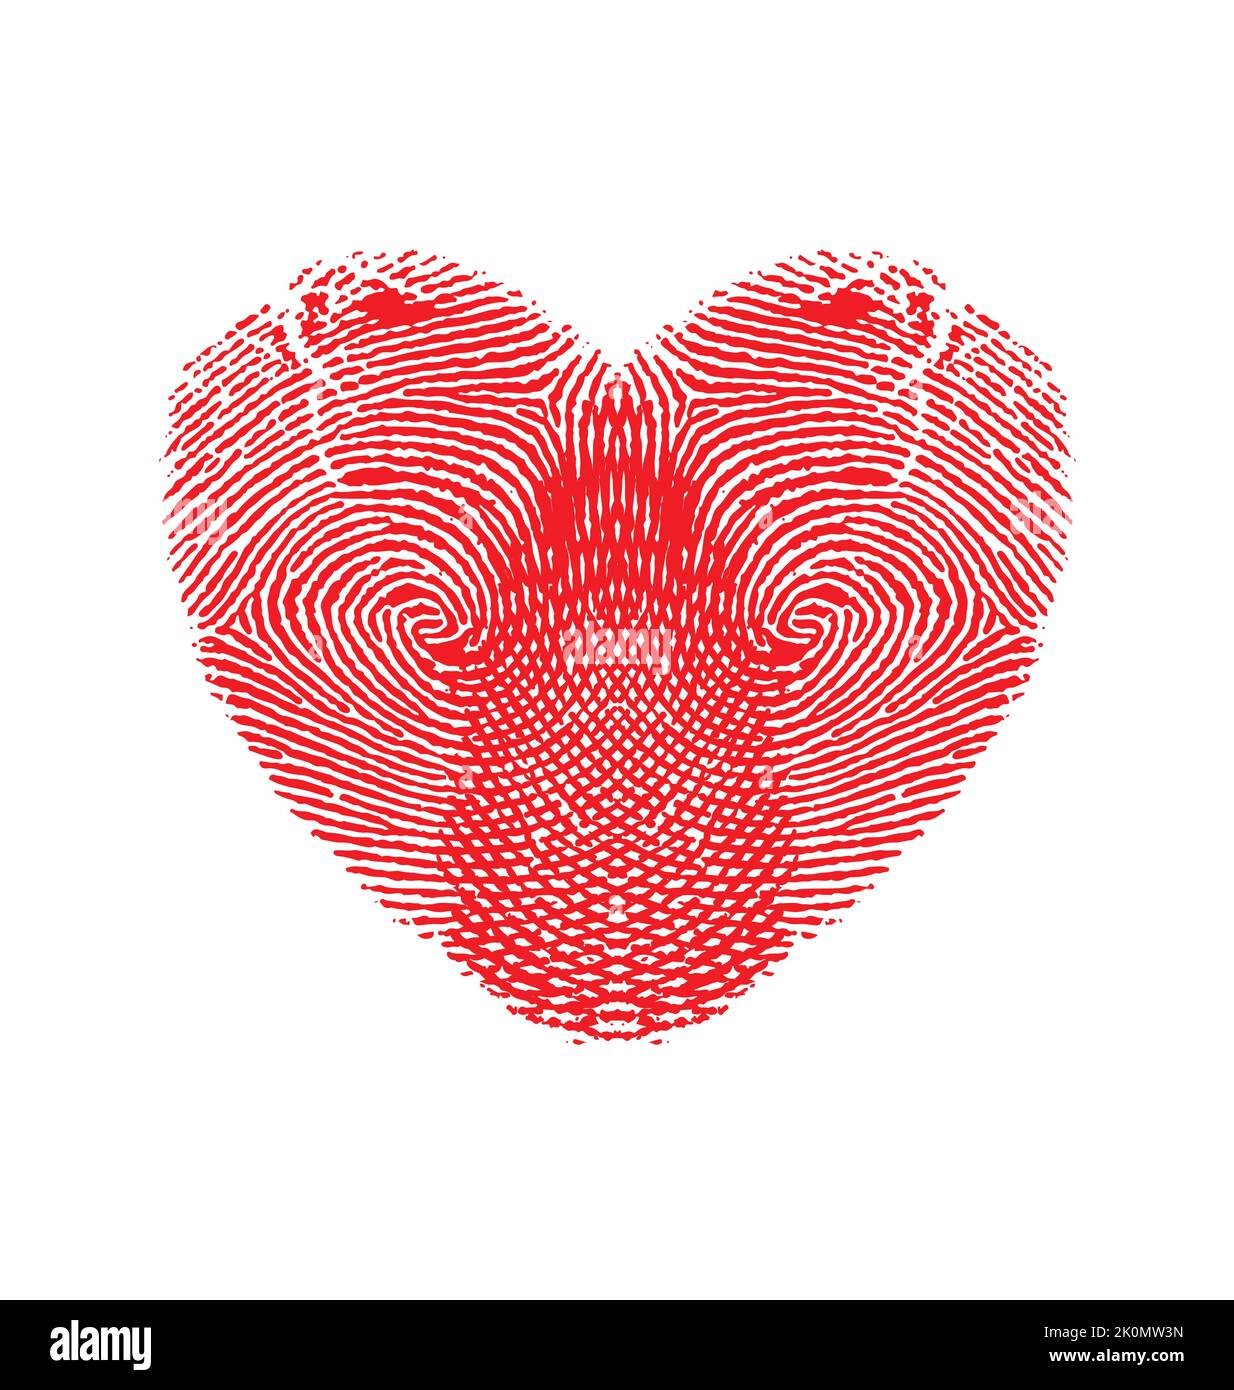 Romantisches rotes Fingerabdruck-Daumen-Druck Liebe Herz Vektor-Symbol auf weißem Hintergrund isoliert Stock Vektor